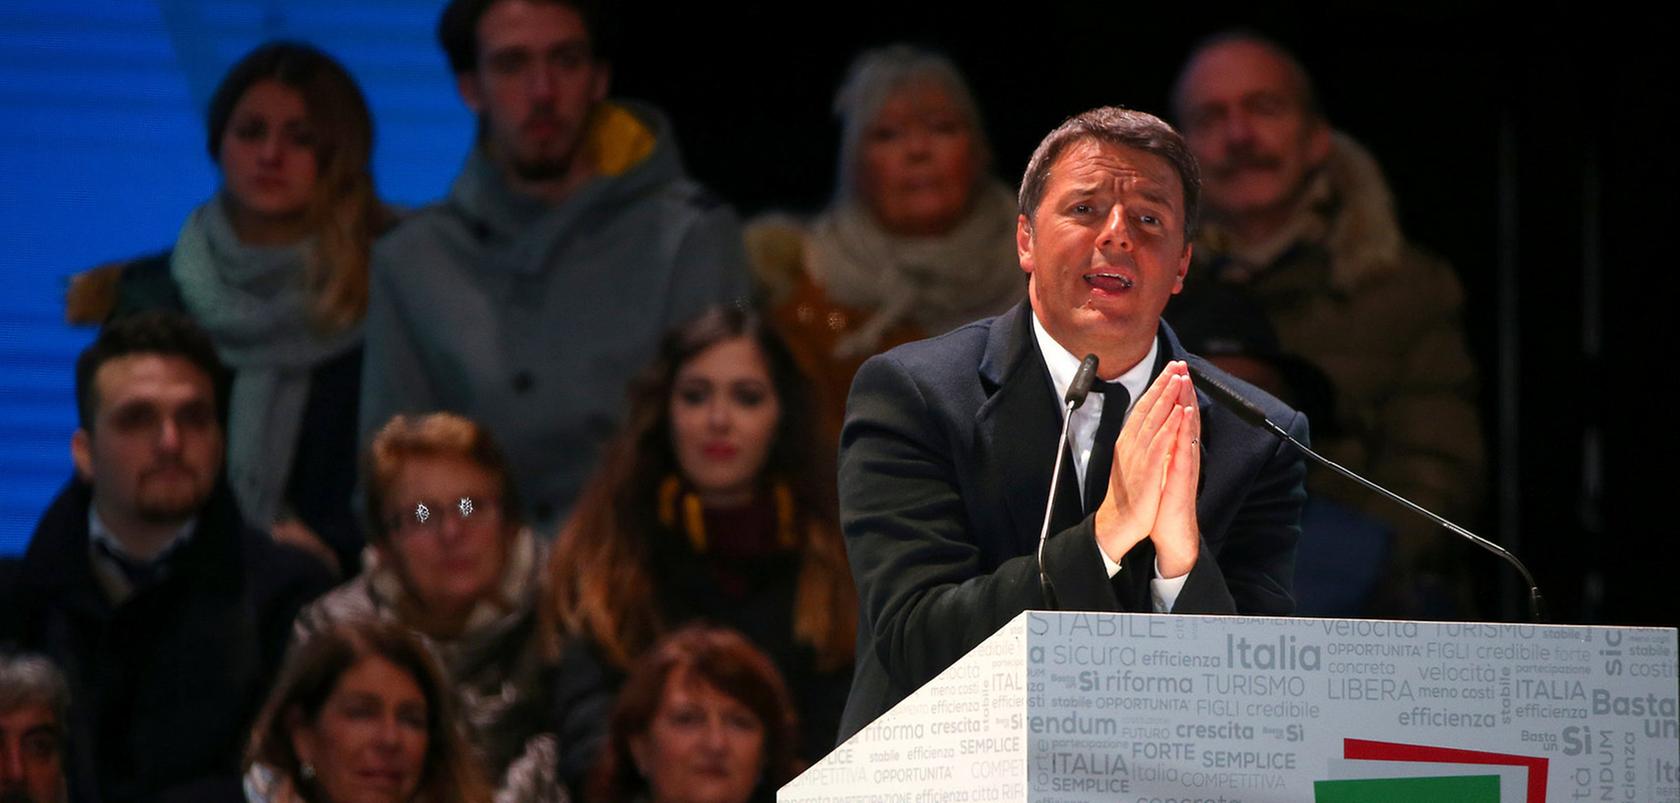 Voller Leidenschaft warb Matteo Renzi bis zuletzt für ein Ja - doch die Mehrheit der Italiener gab ihm ein Nein.